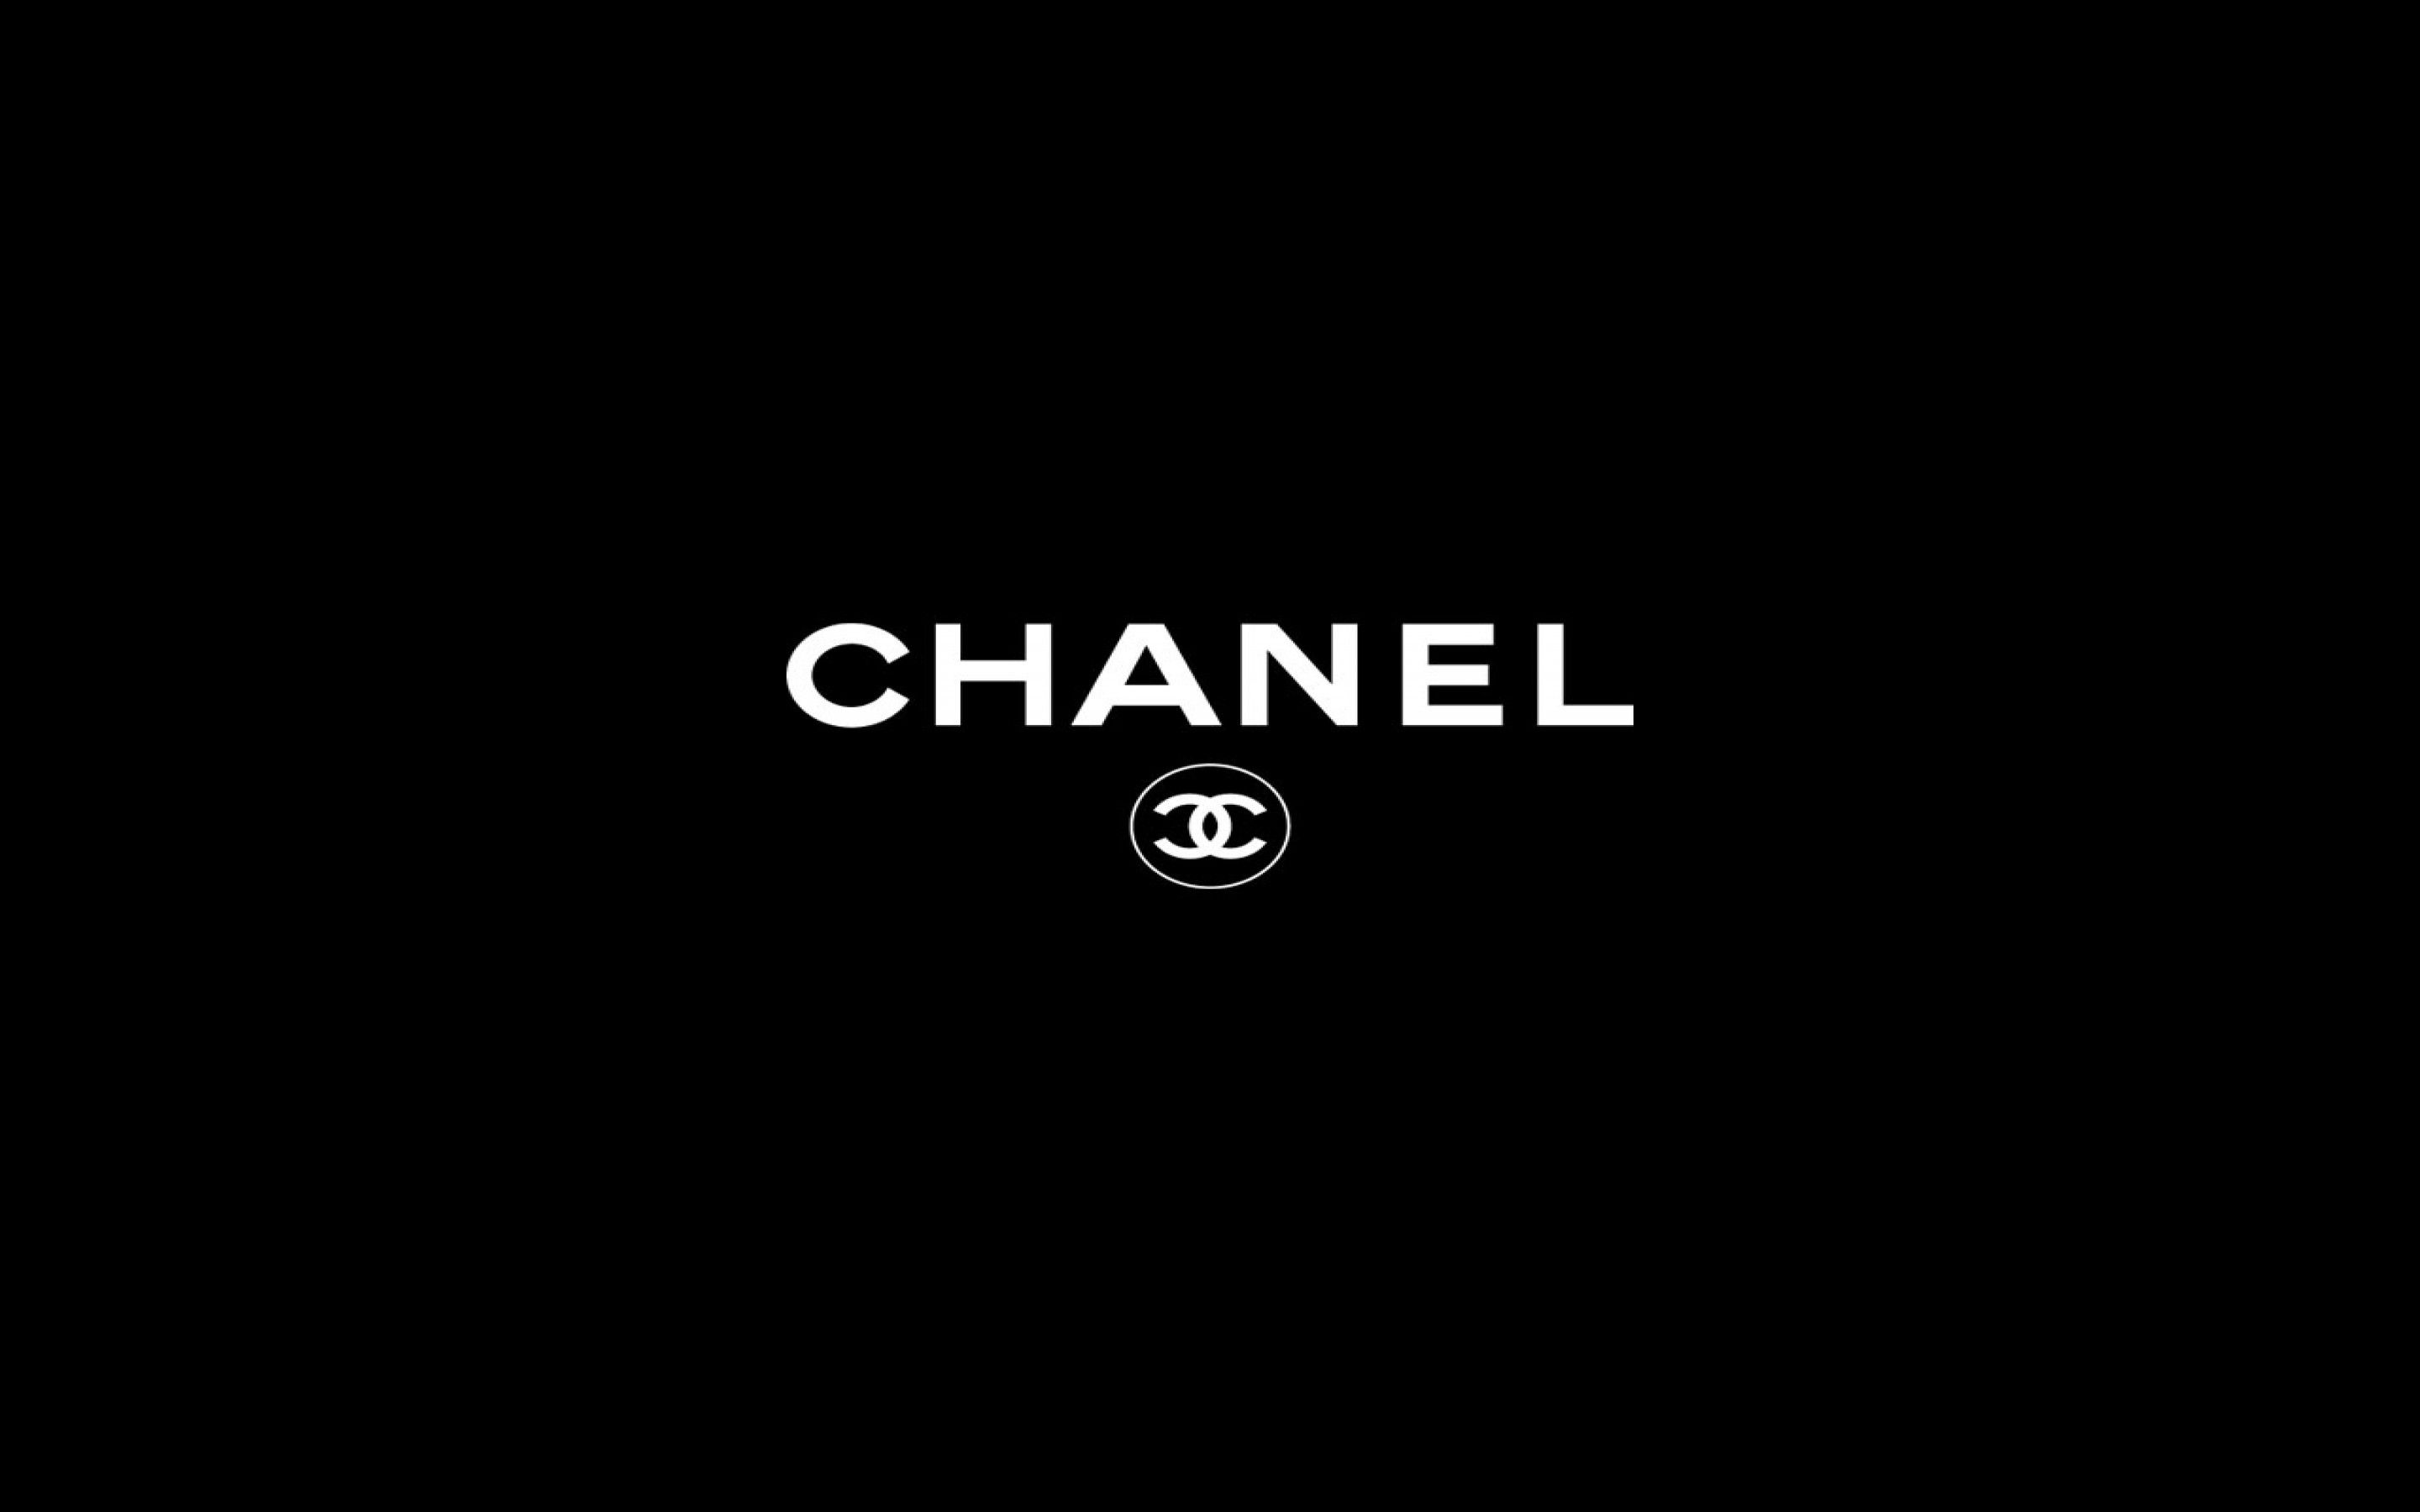 Fondos de escritorio de Chanel - Los mejores fondos de escritorio de Chanel gratis